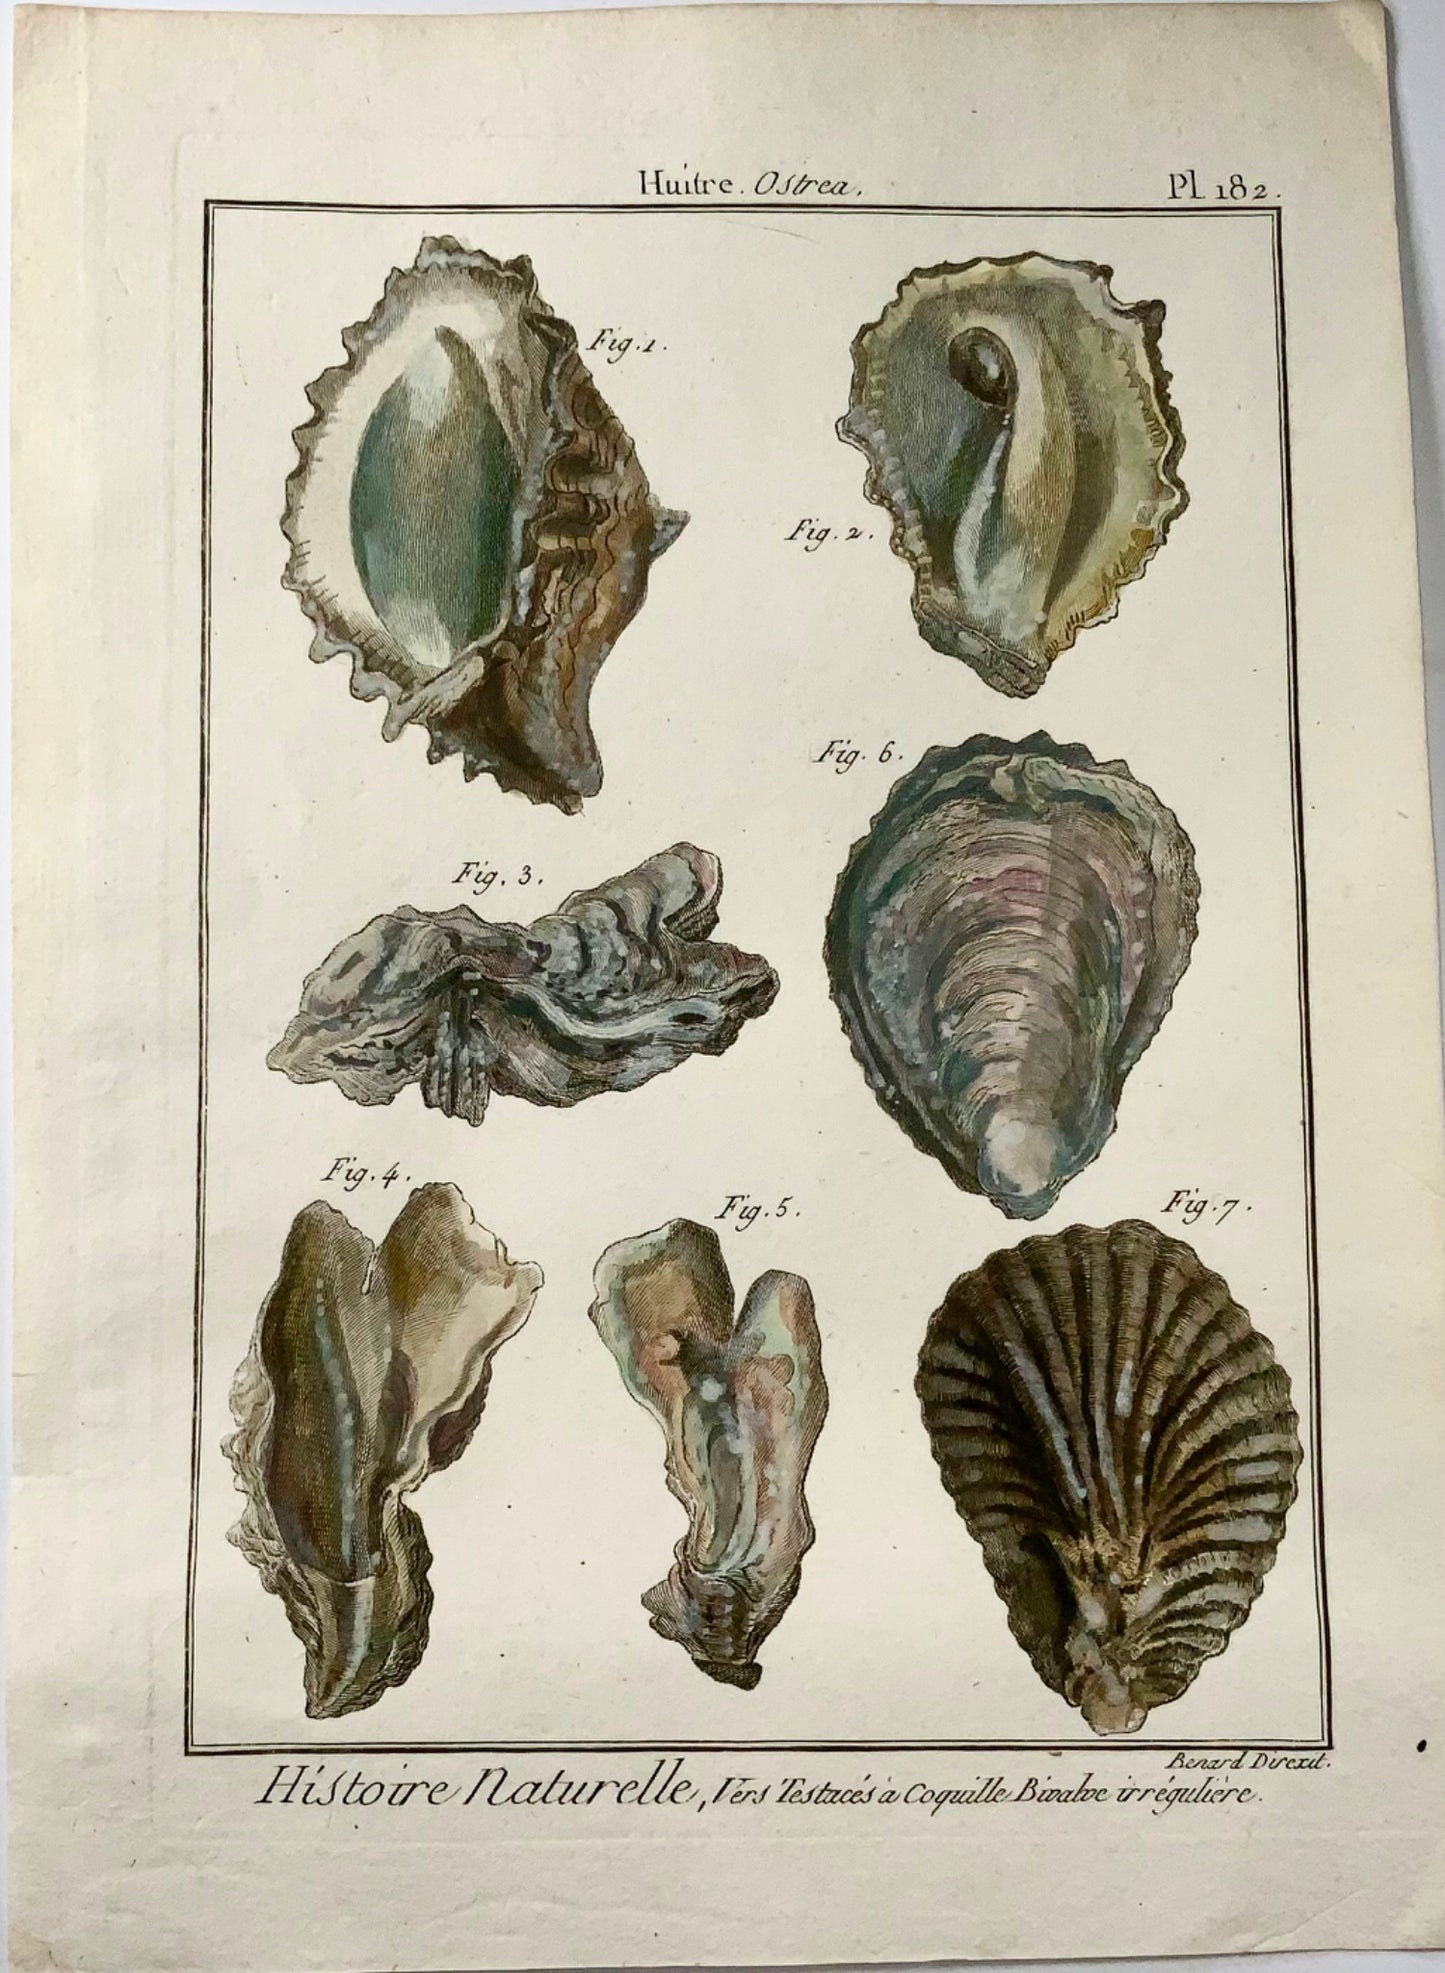 1789 Oysters, Benard sc. quarto, hand colour, engraving, marine life